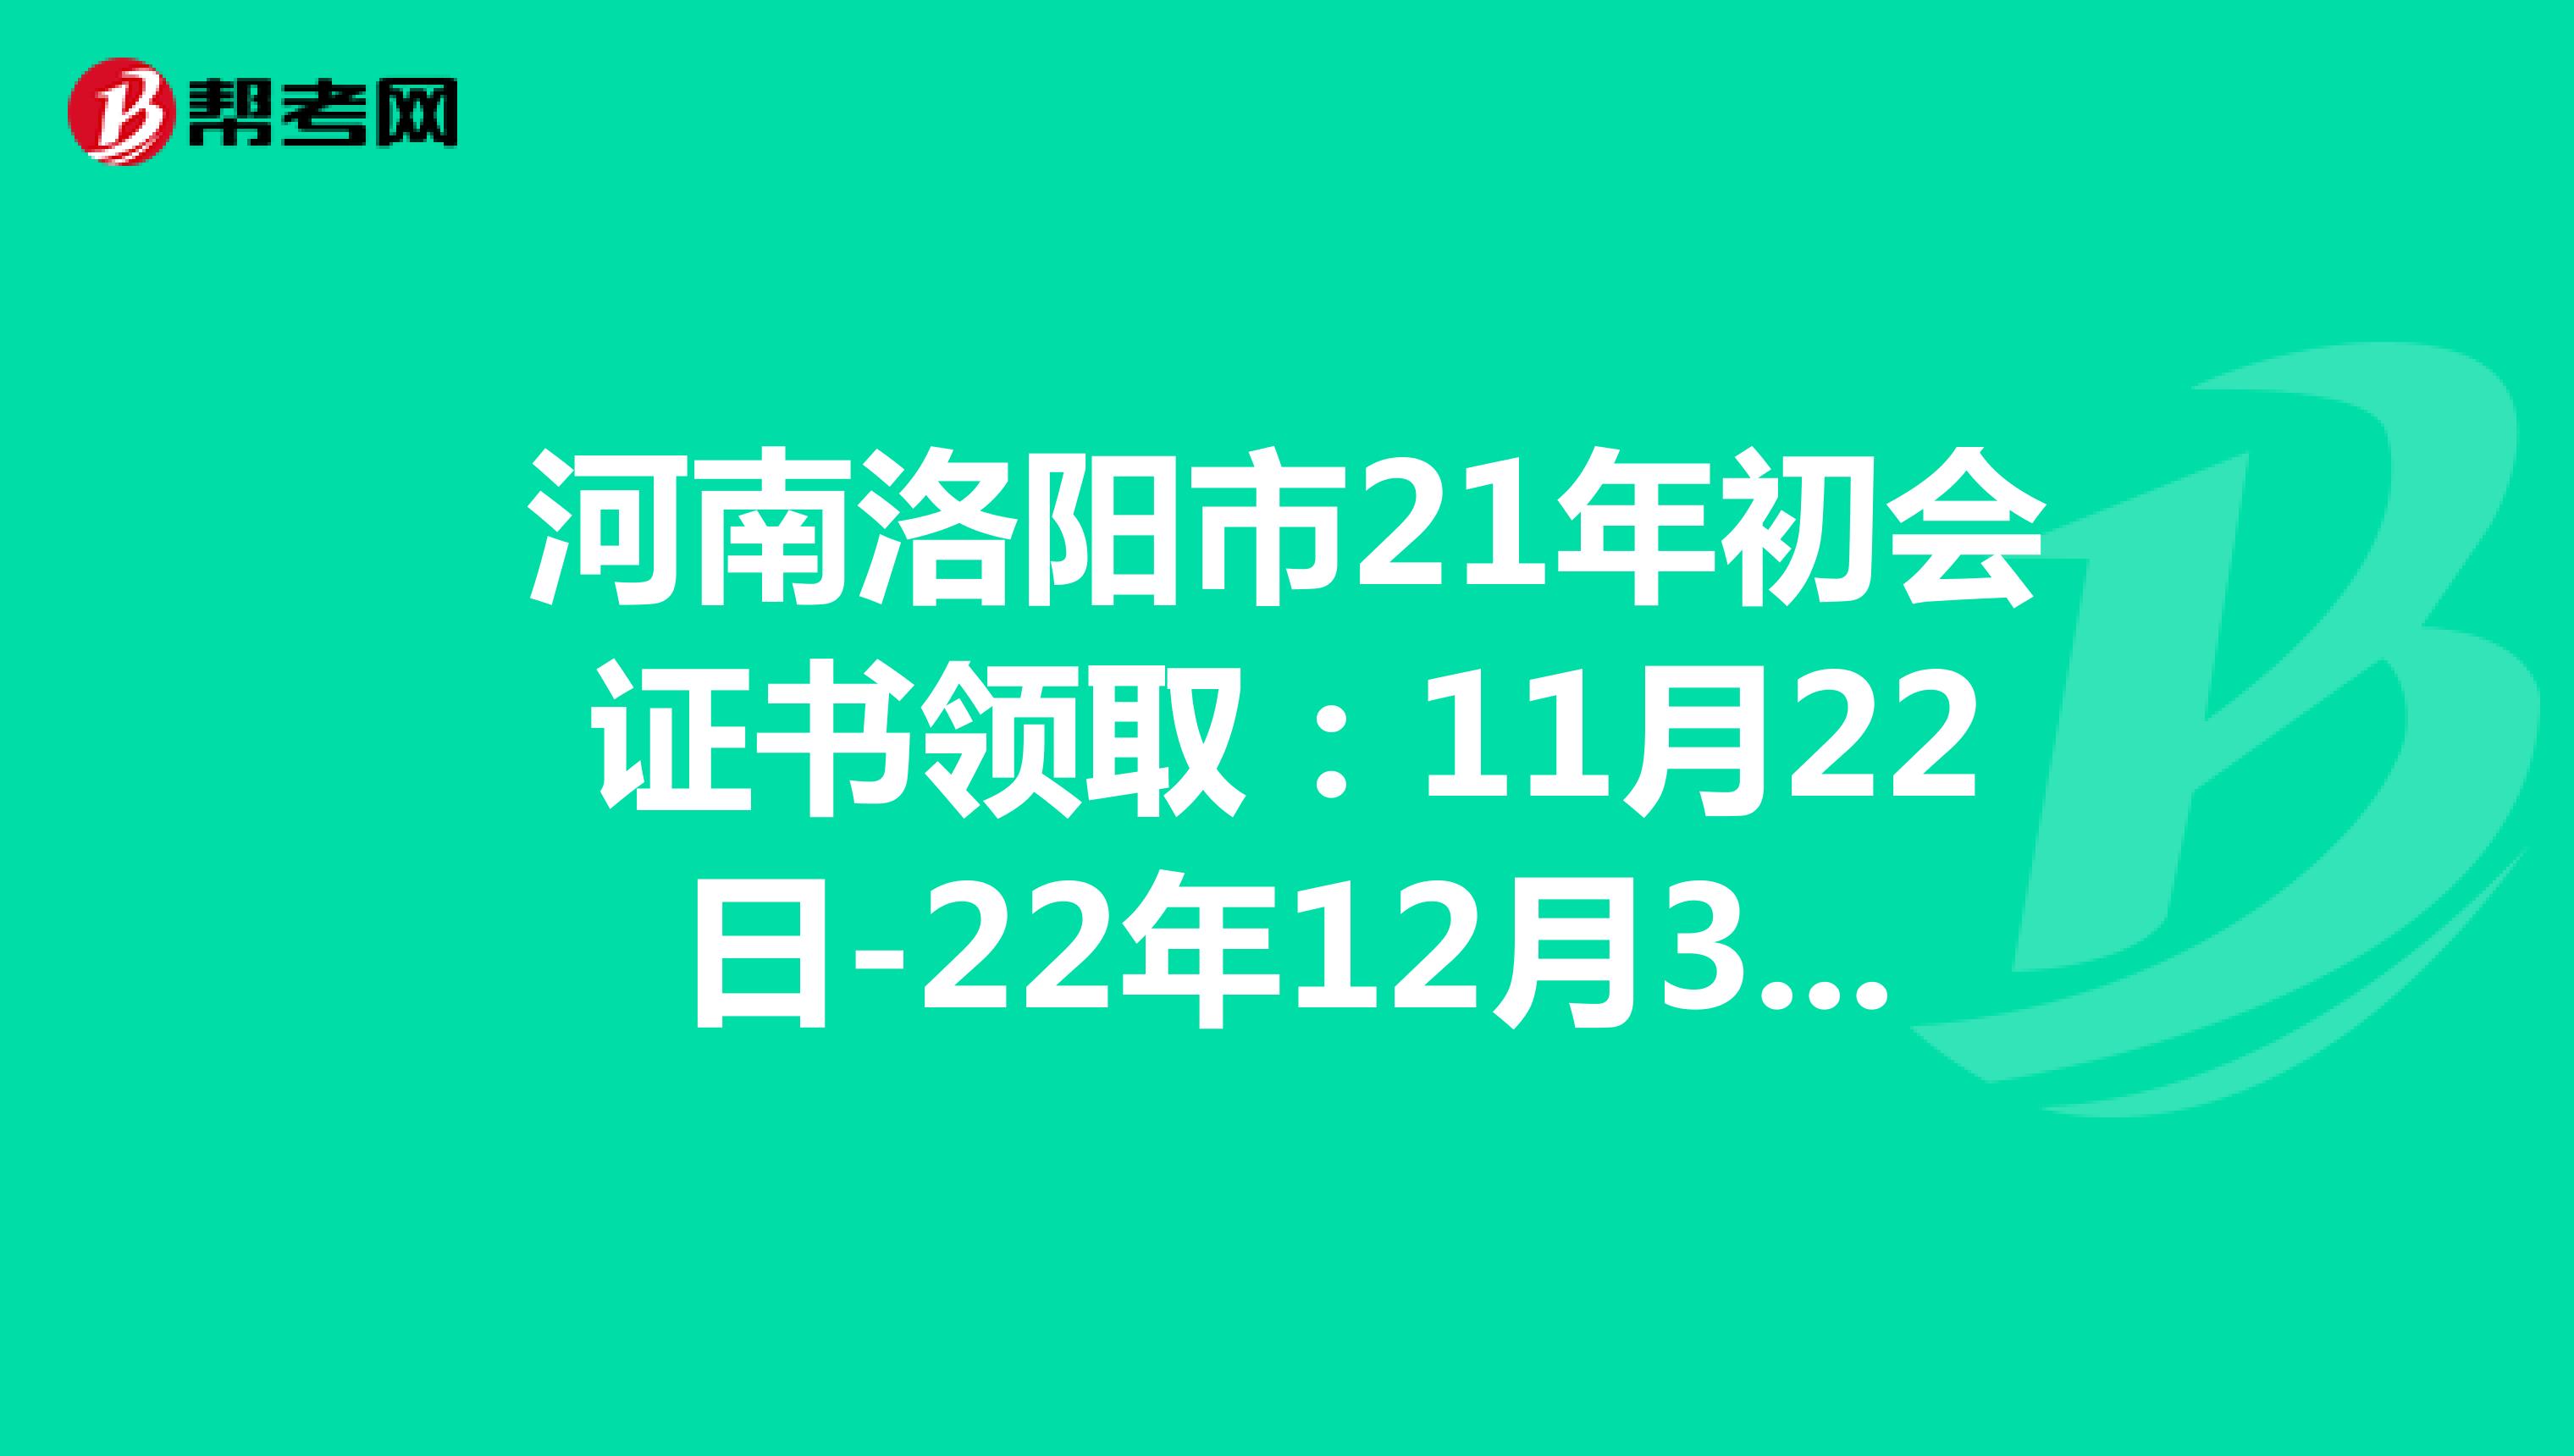 河南洛阳市21年初会证书领取：11月22日-22年12月31日